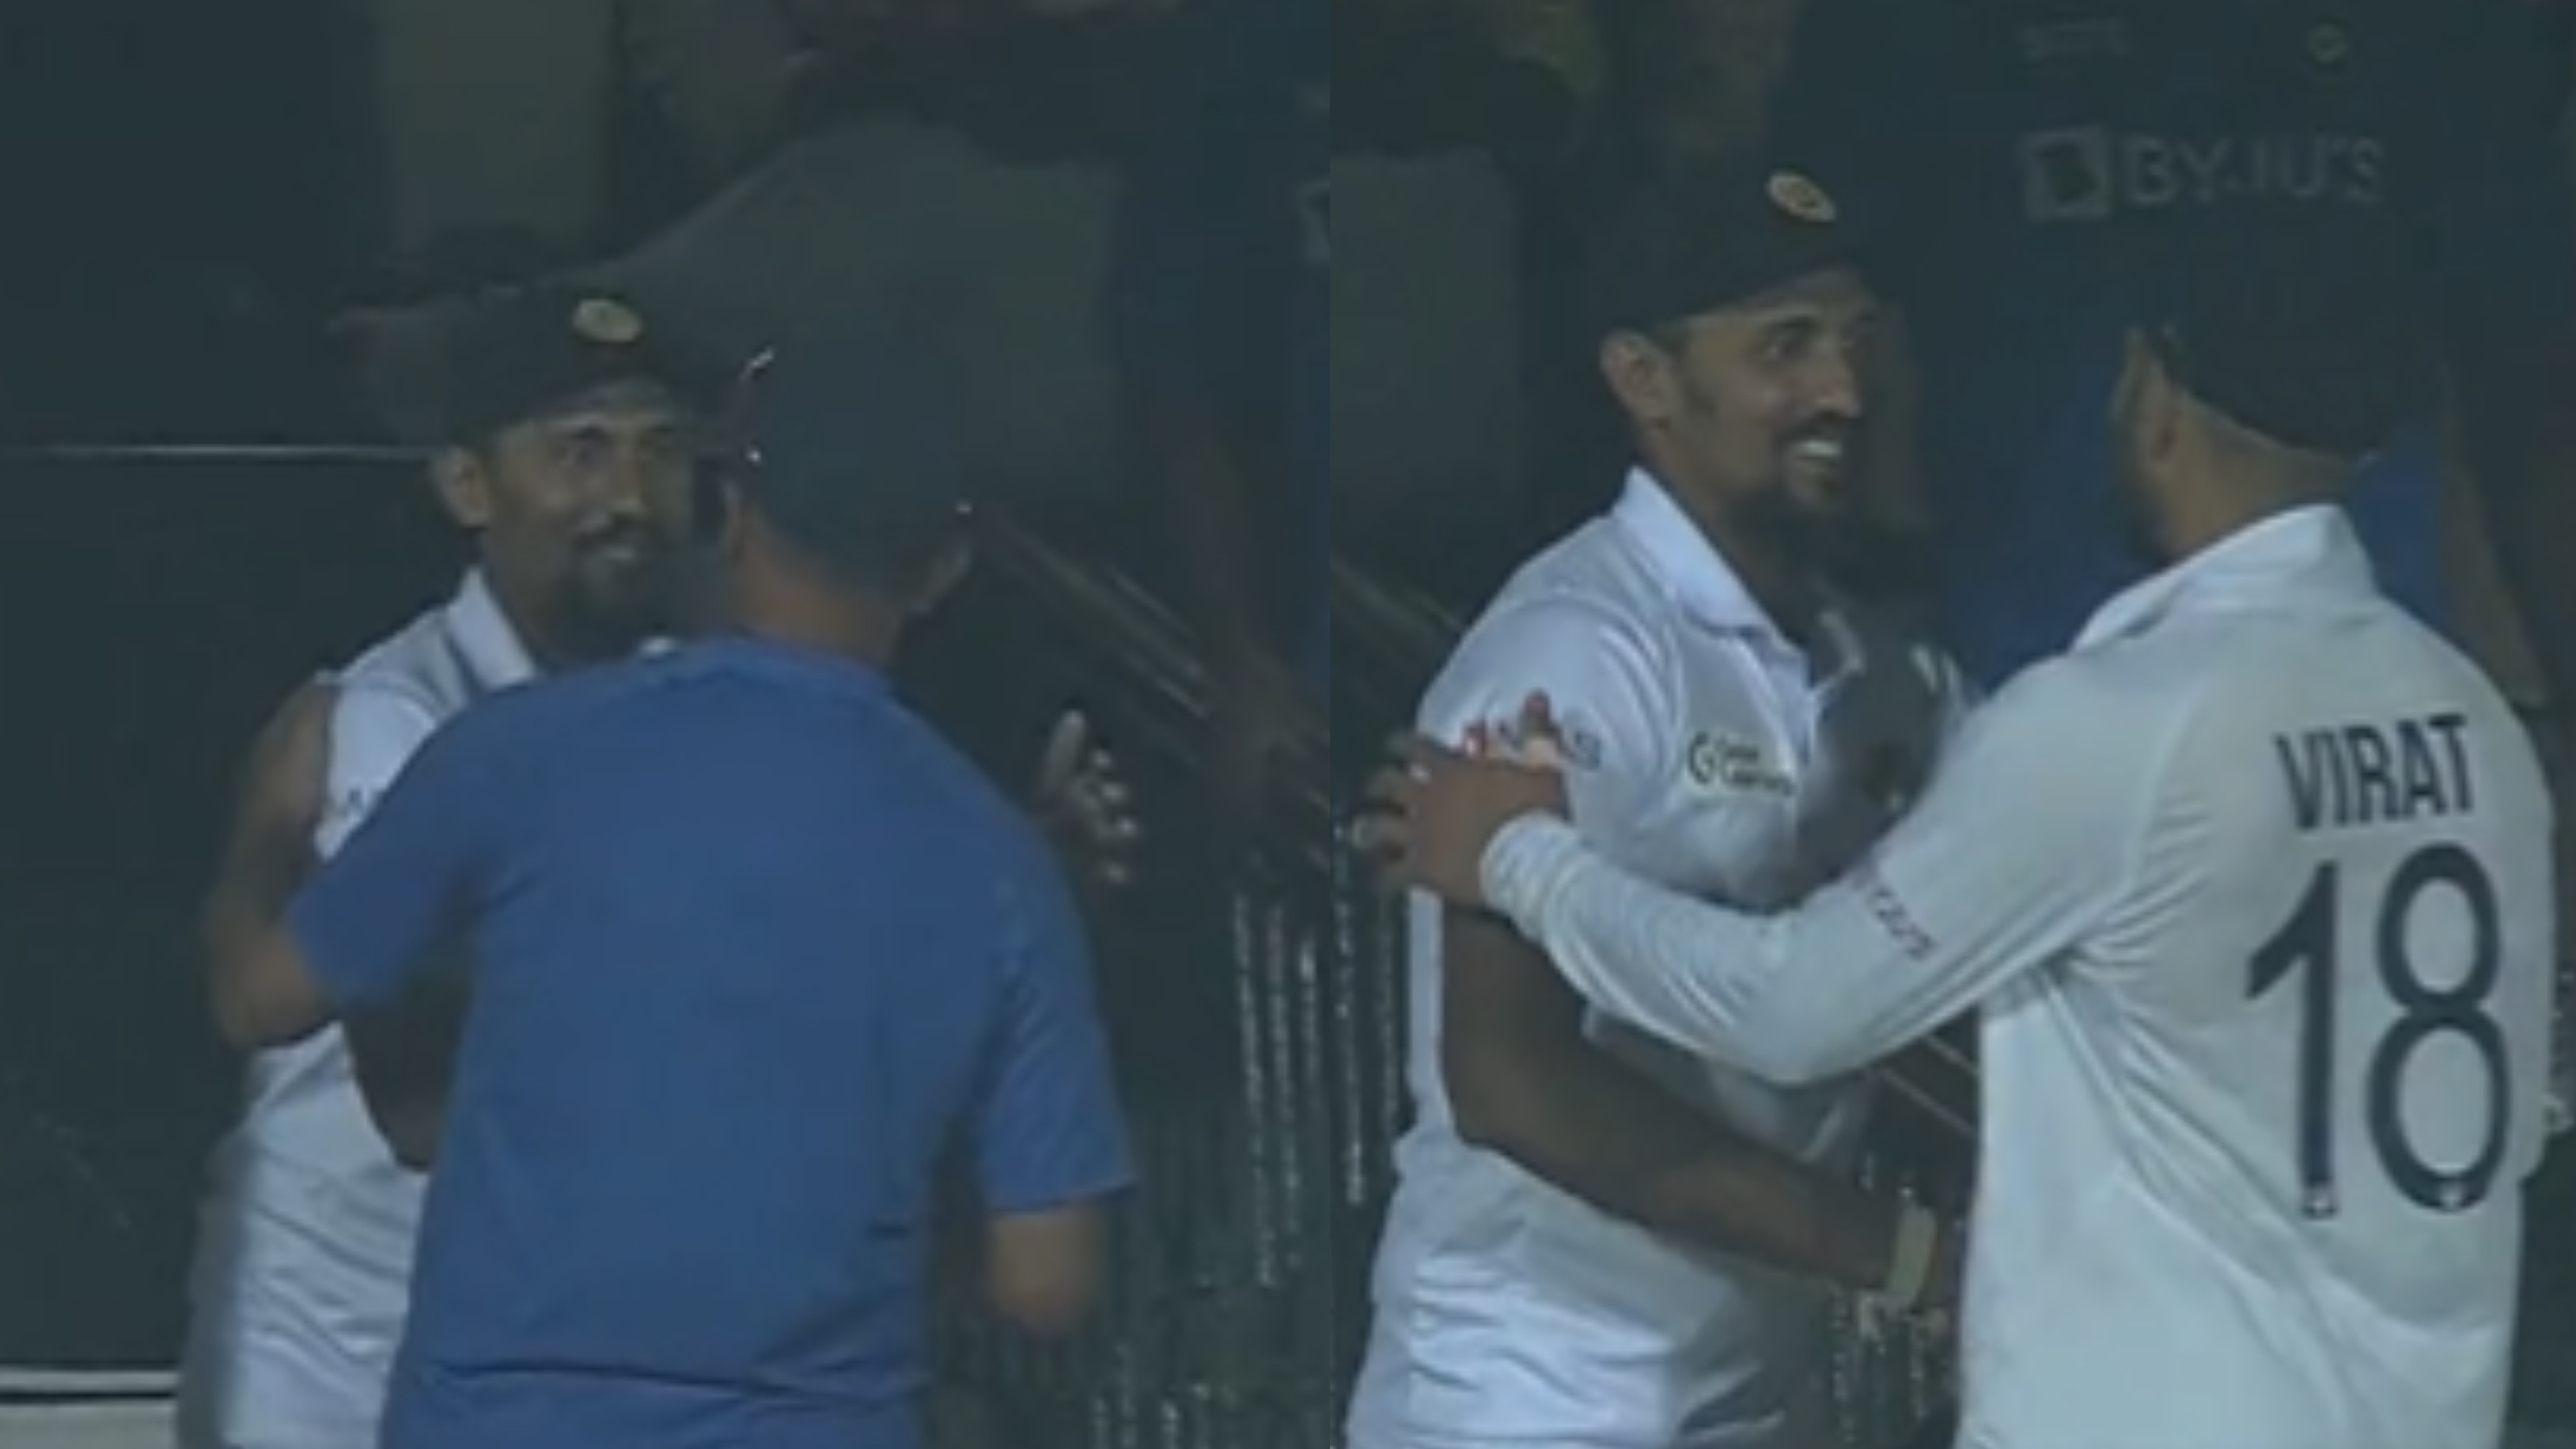 IND v SL 2022: WATCH – Kohli, Dravid visit Sri Lanka change room to congratulate Suranga Lakmal on his last Test